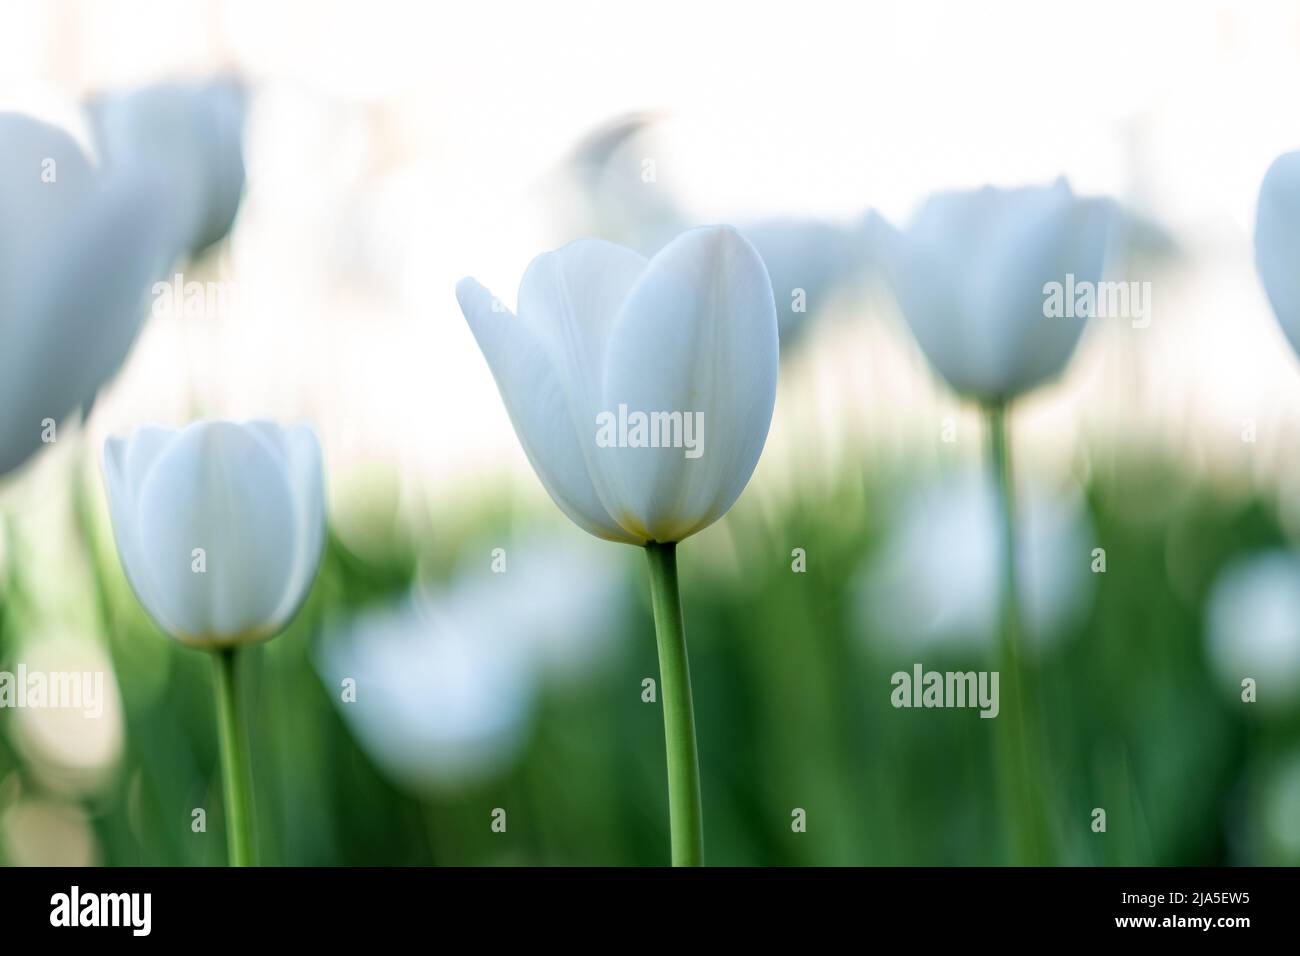 Brillantes flores de tulipanes con pétalos blancos Foto de stock